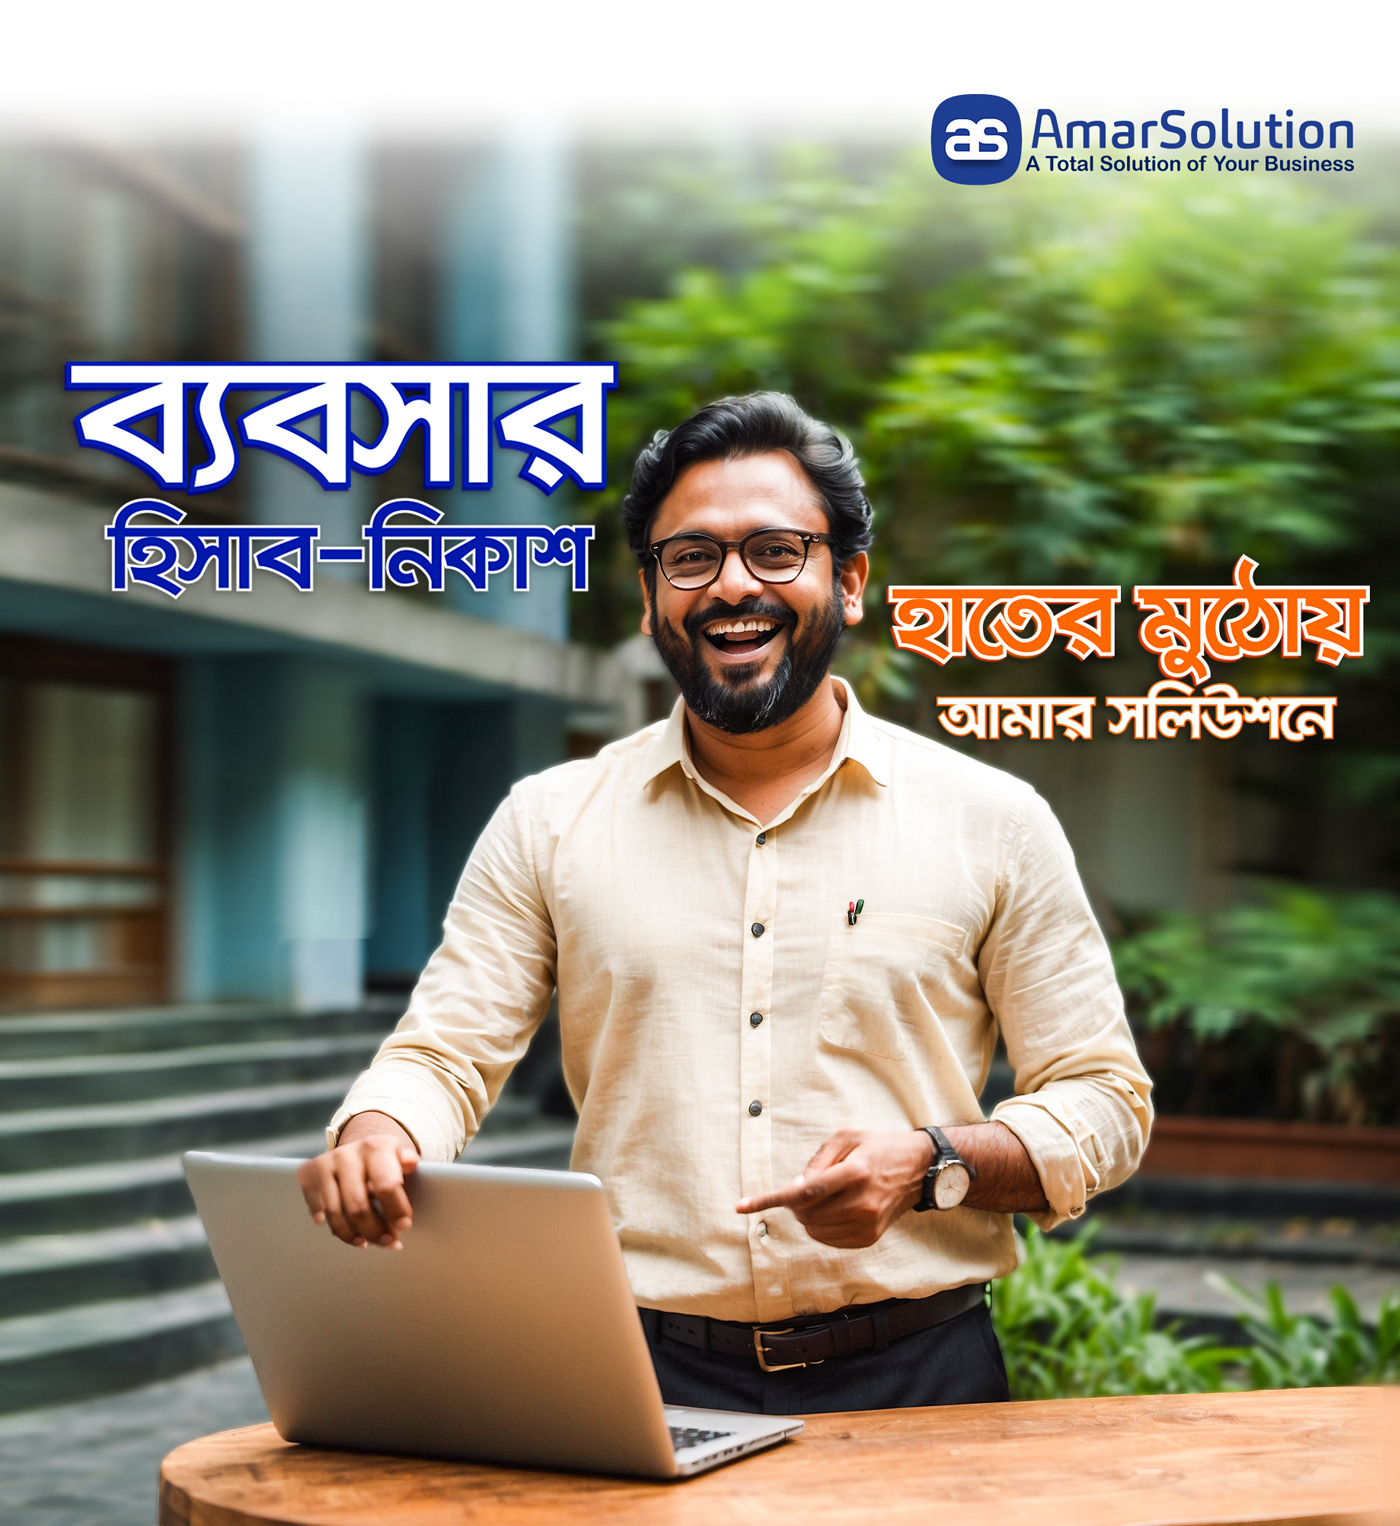 accounting software in bangladesh